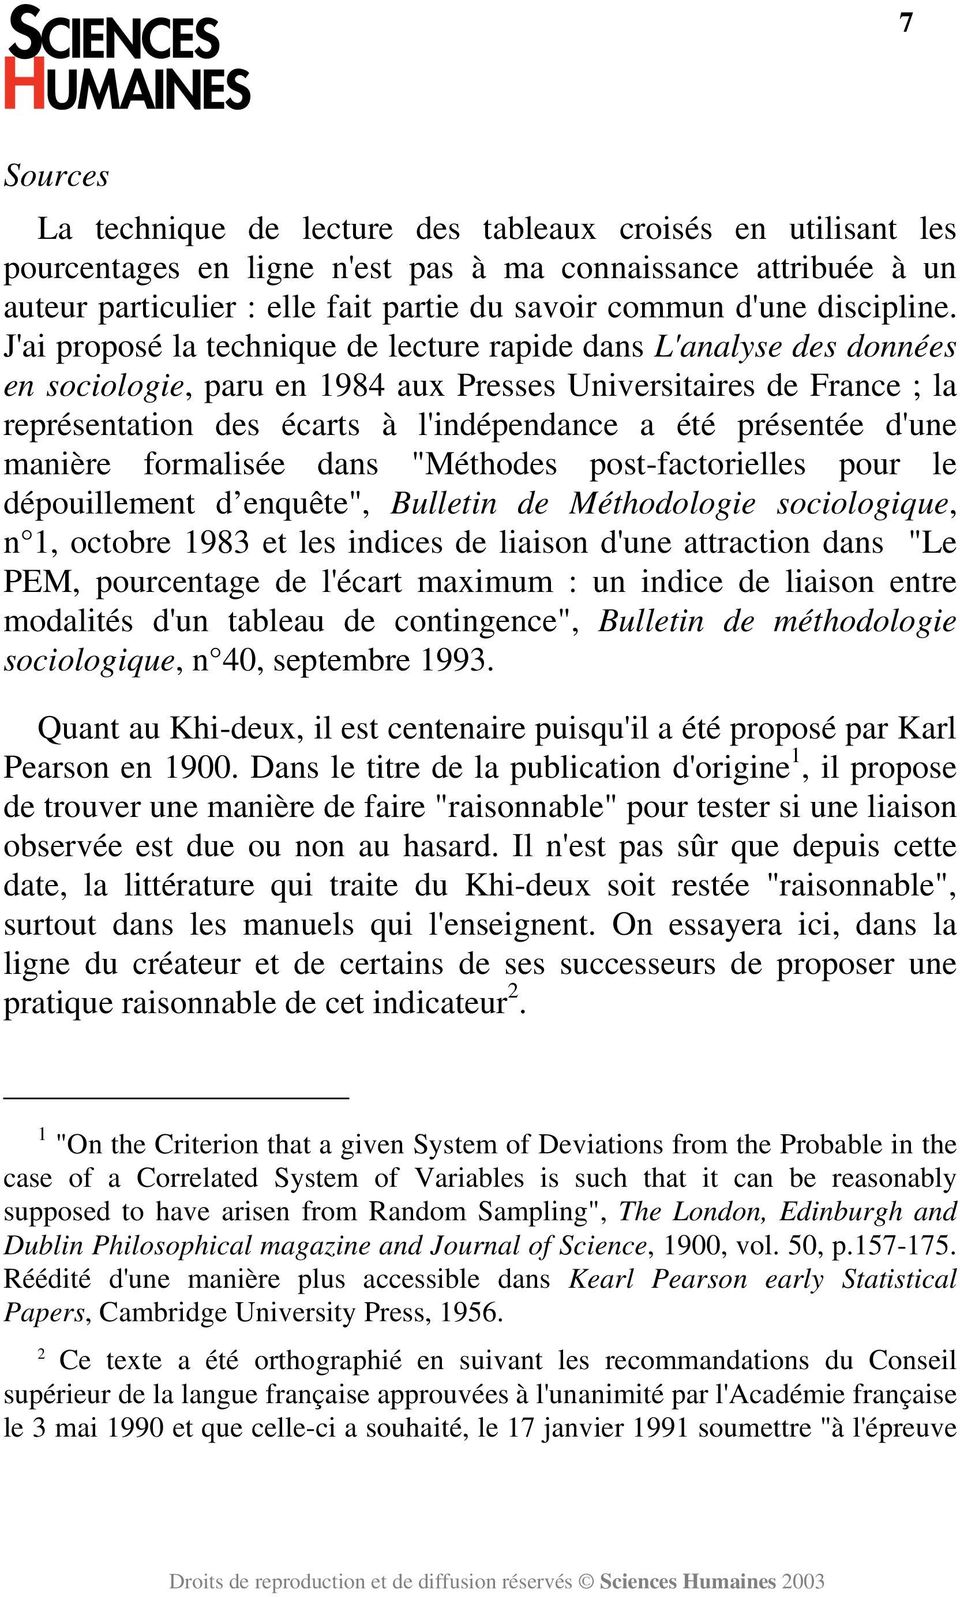 J'ai proposé la technique de lecture rapide dans L'analyse des données en sociologie, paru en 1984 aux Presses Universitaires de France ; la représentation des écarts à l'indépendance a été présentée